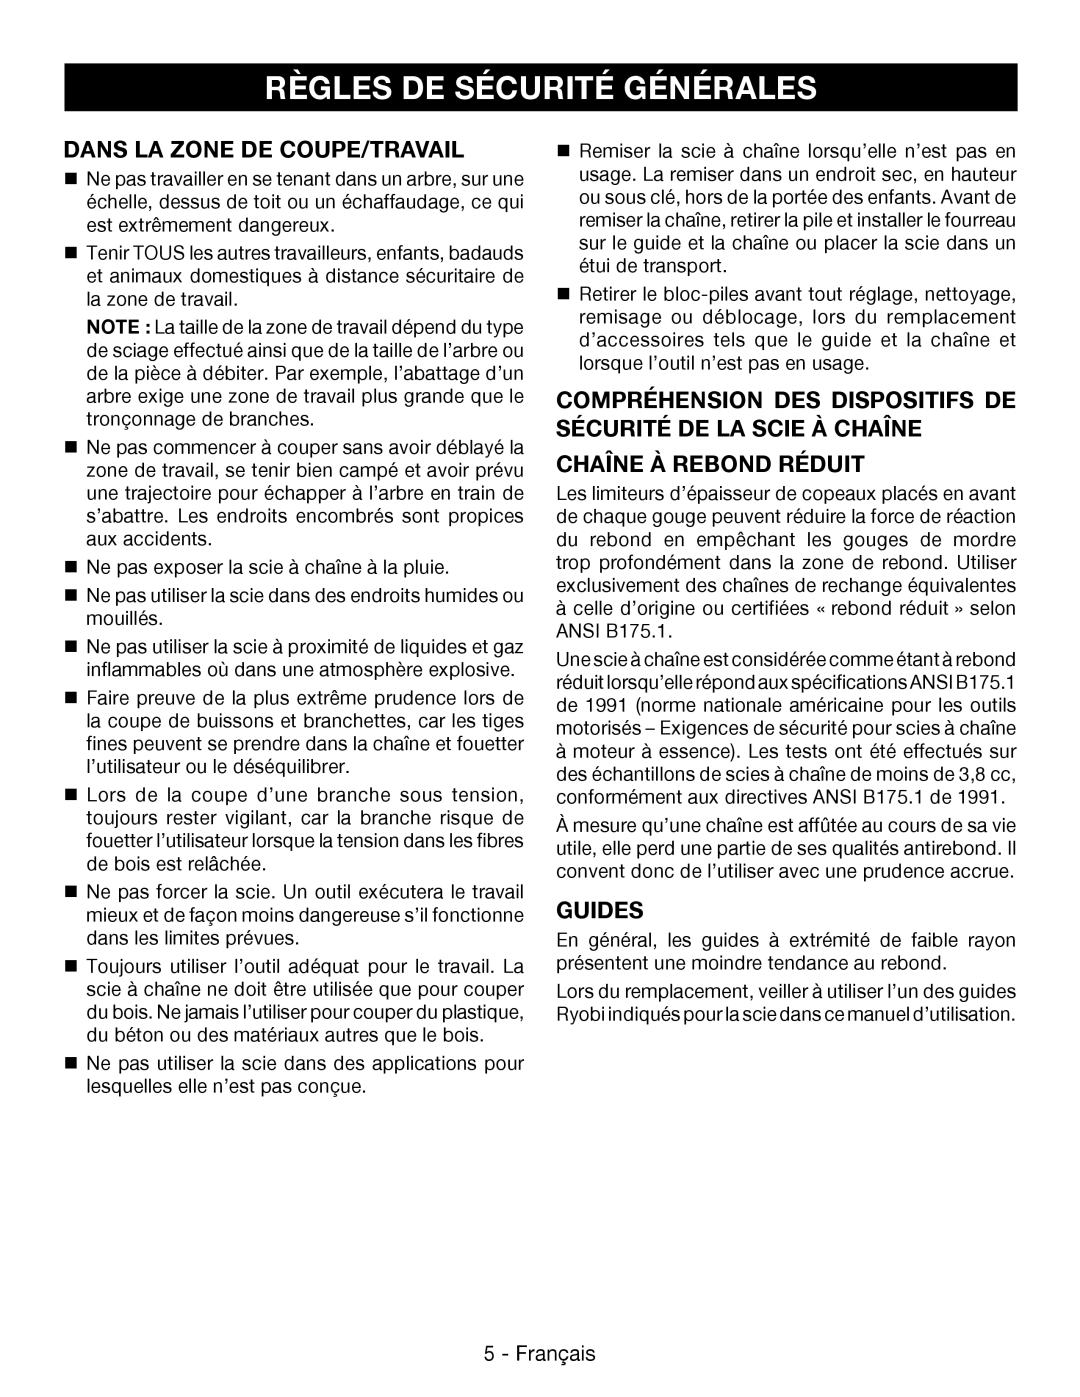 Ryobi P545 Dans La Zone De Coupe/Travail, Chaîne À Rebond Réduit, Guides, Règles De Sécurité Générales, Français 